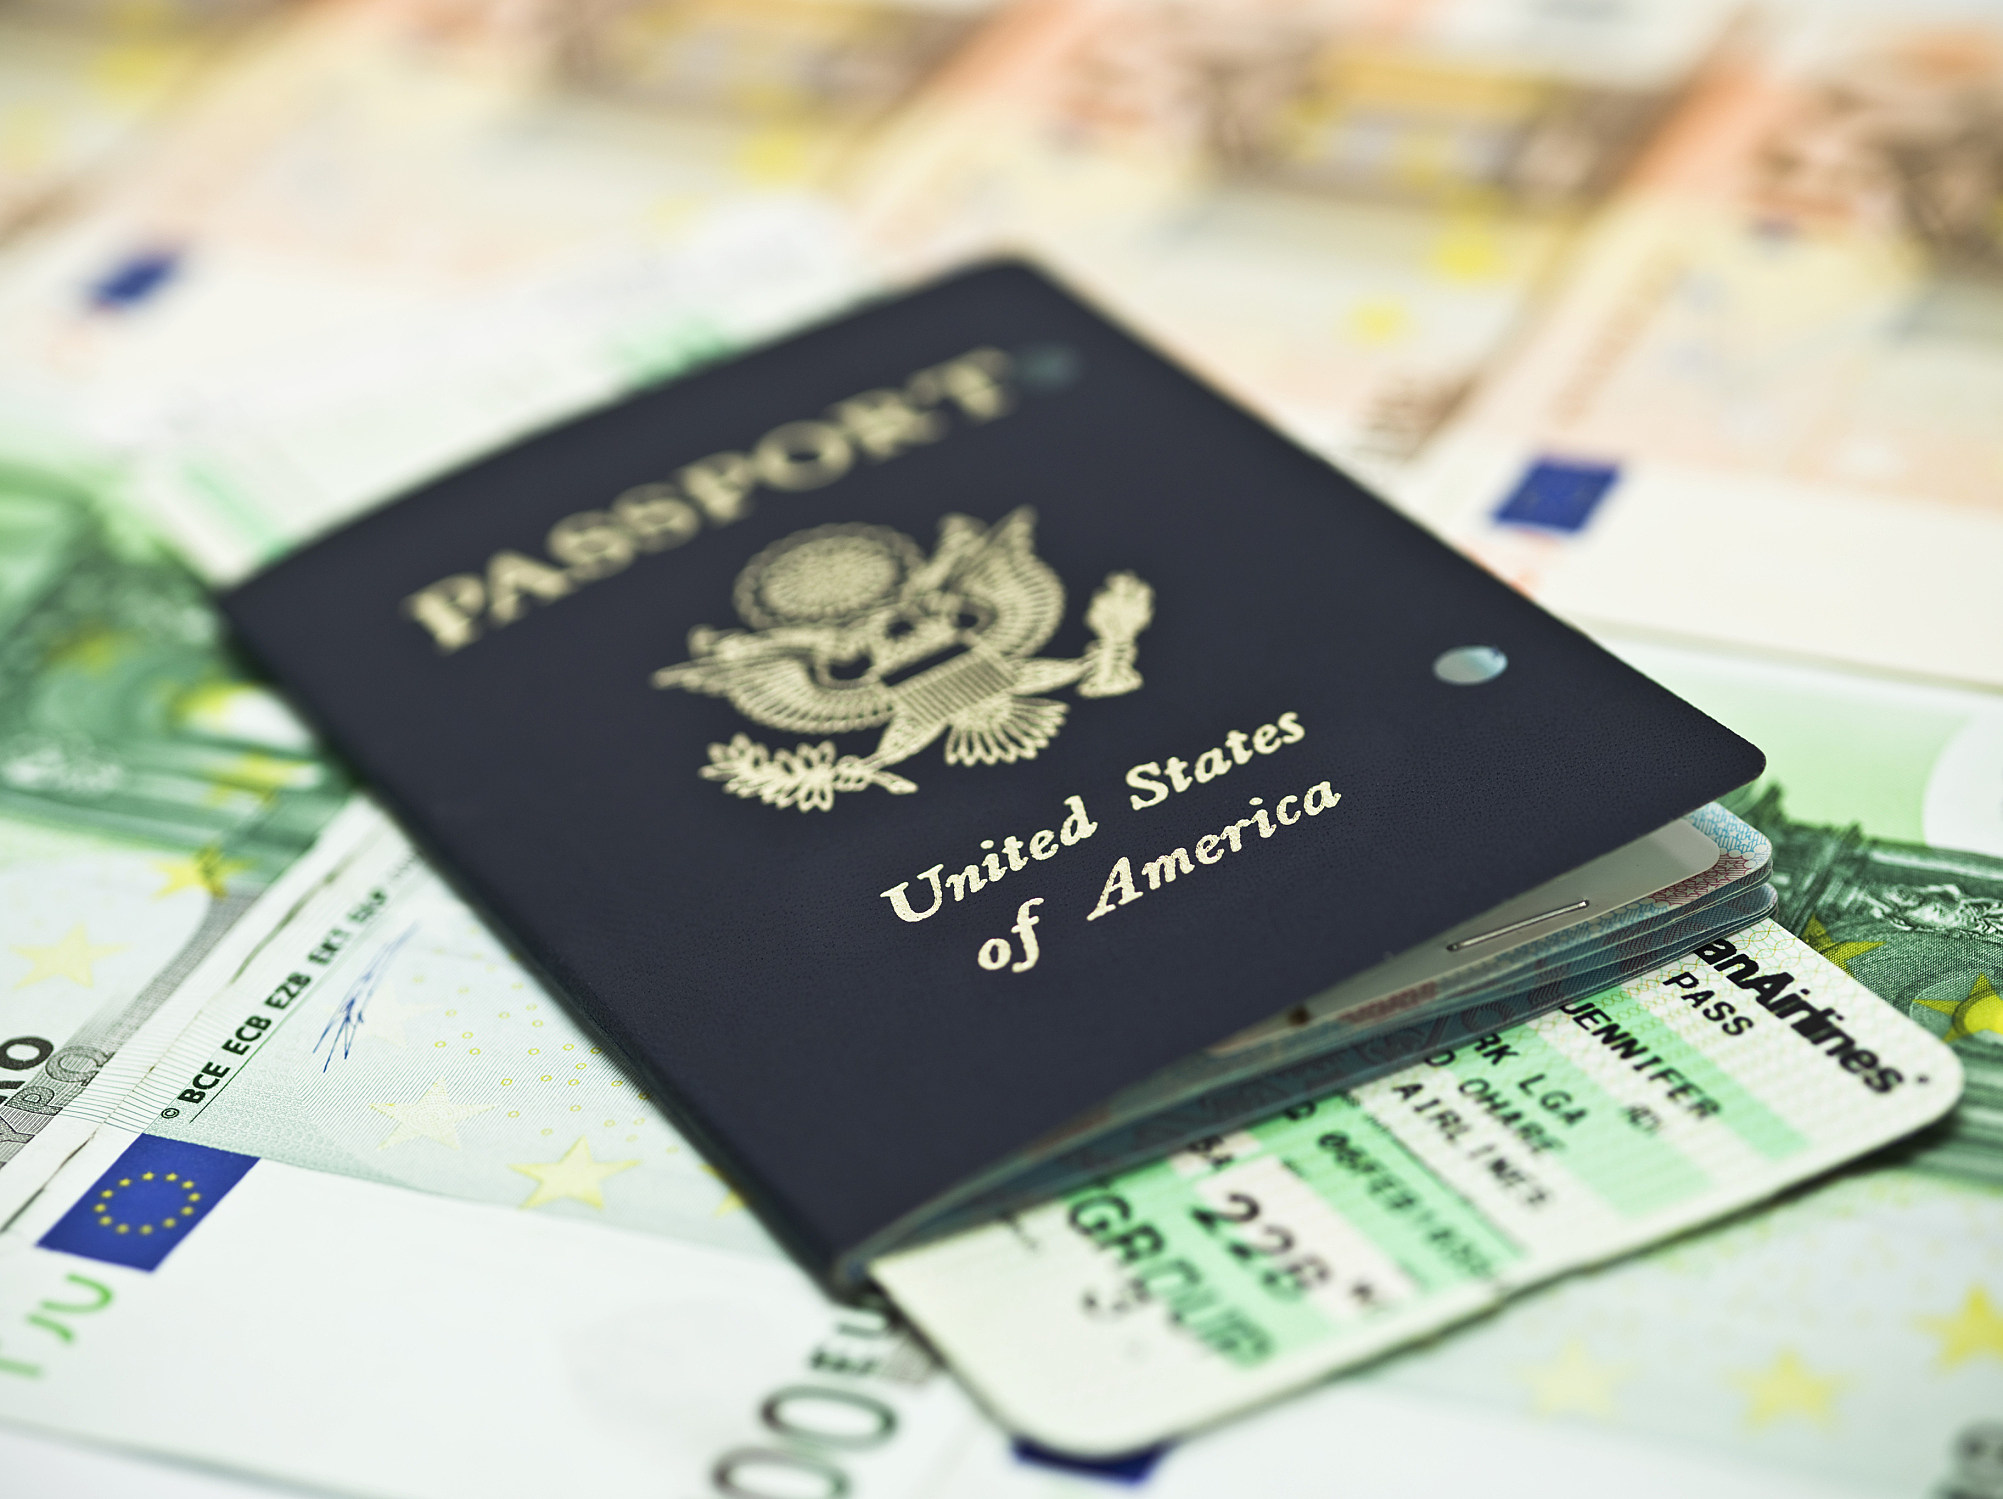 usps scheduler minor passport renewal